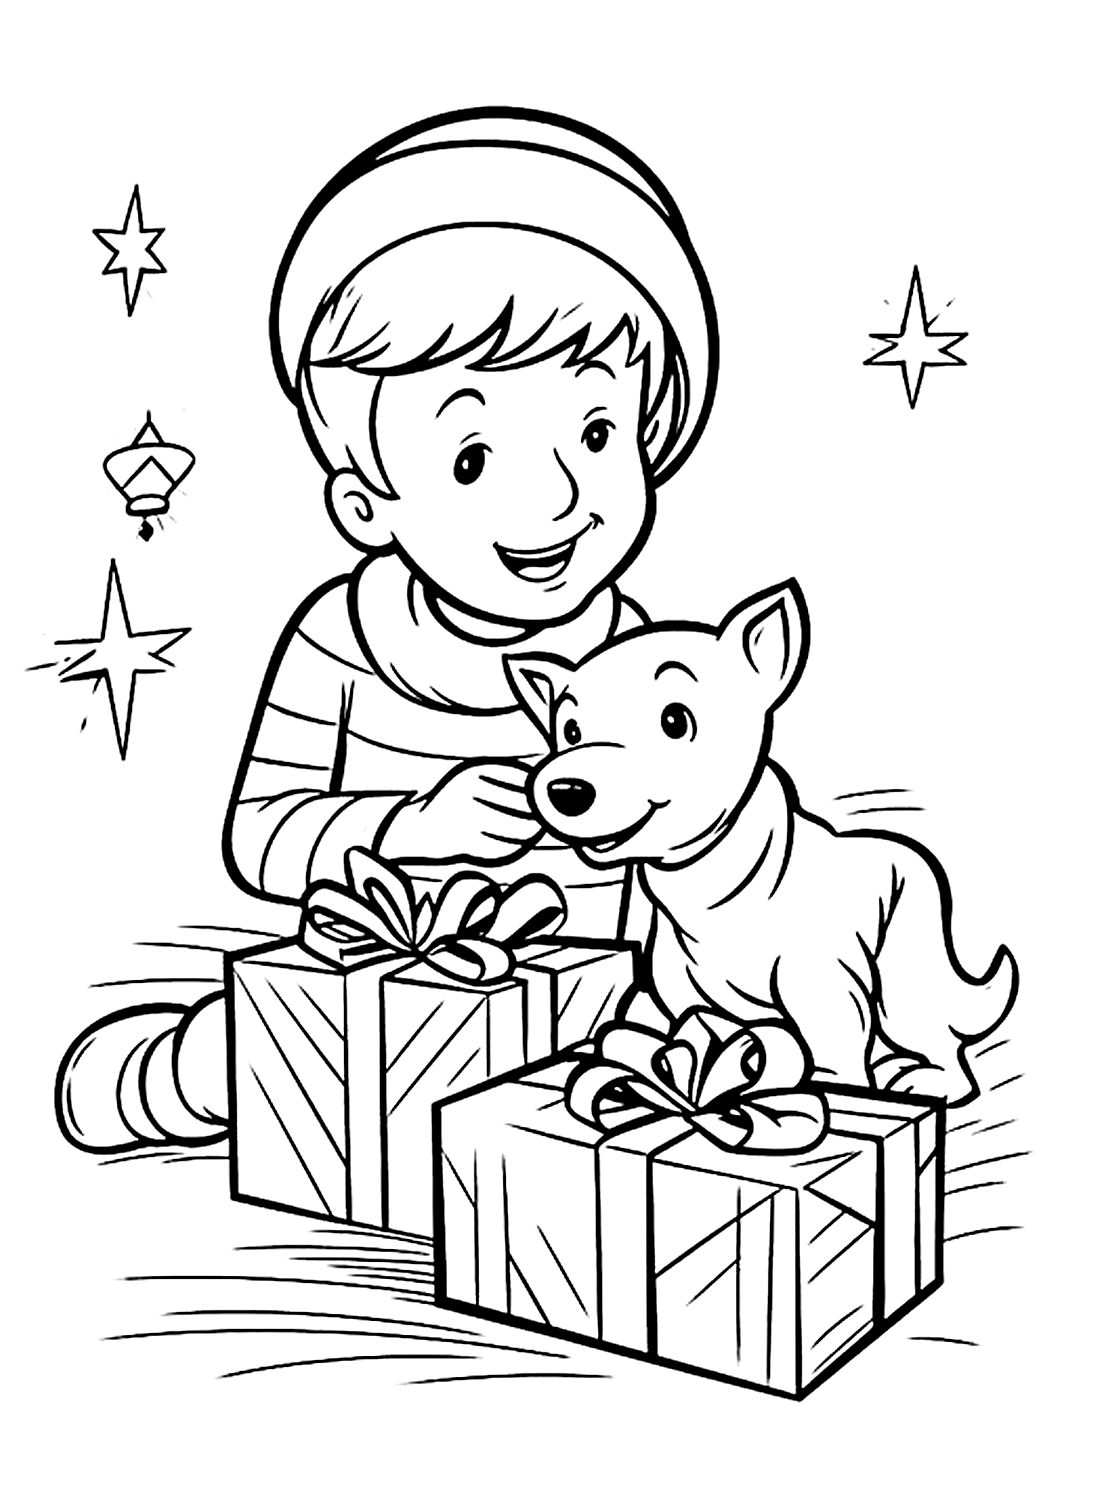 Imagem colorida de um menino e um cachorrinho